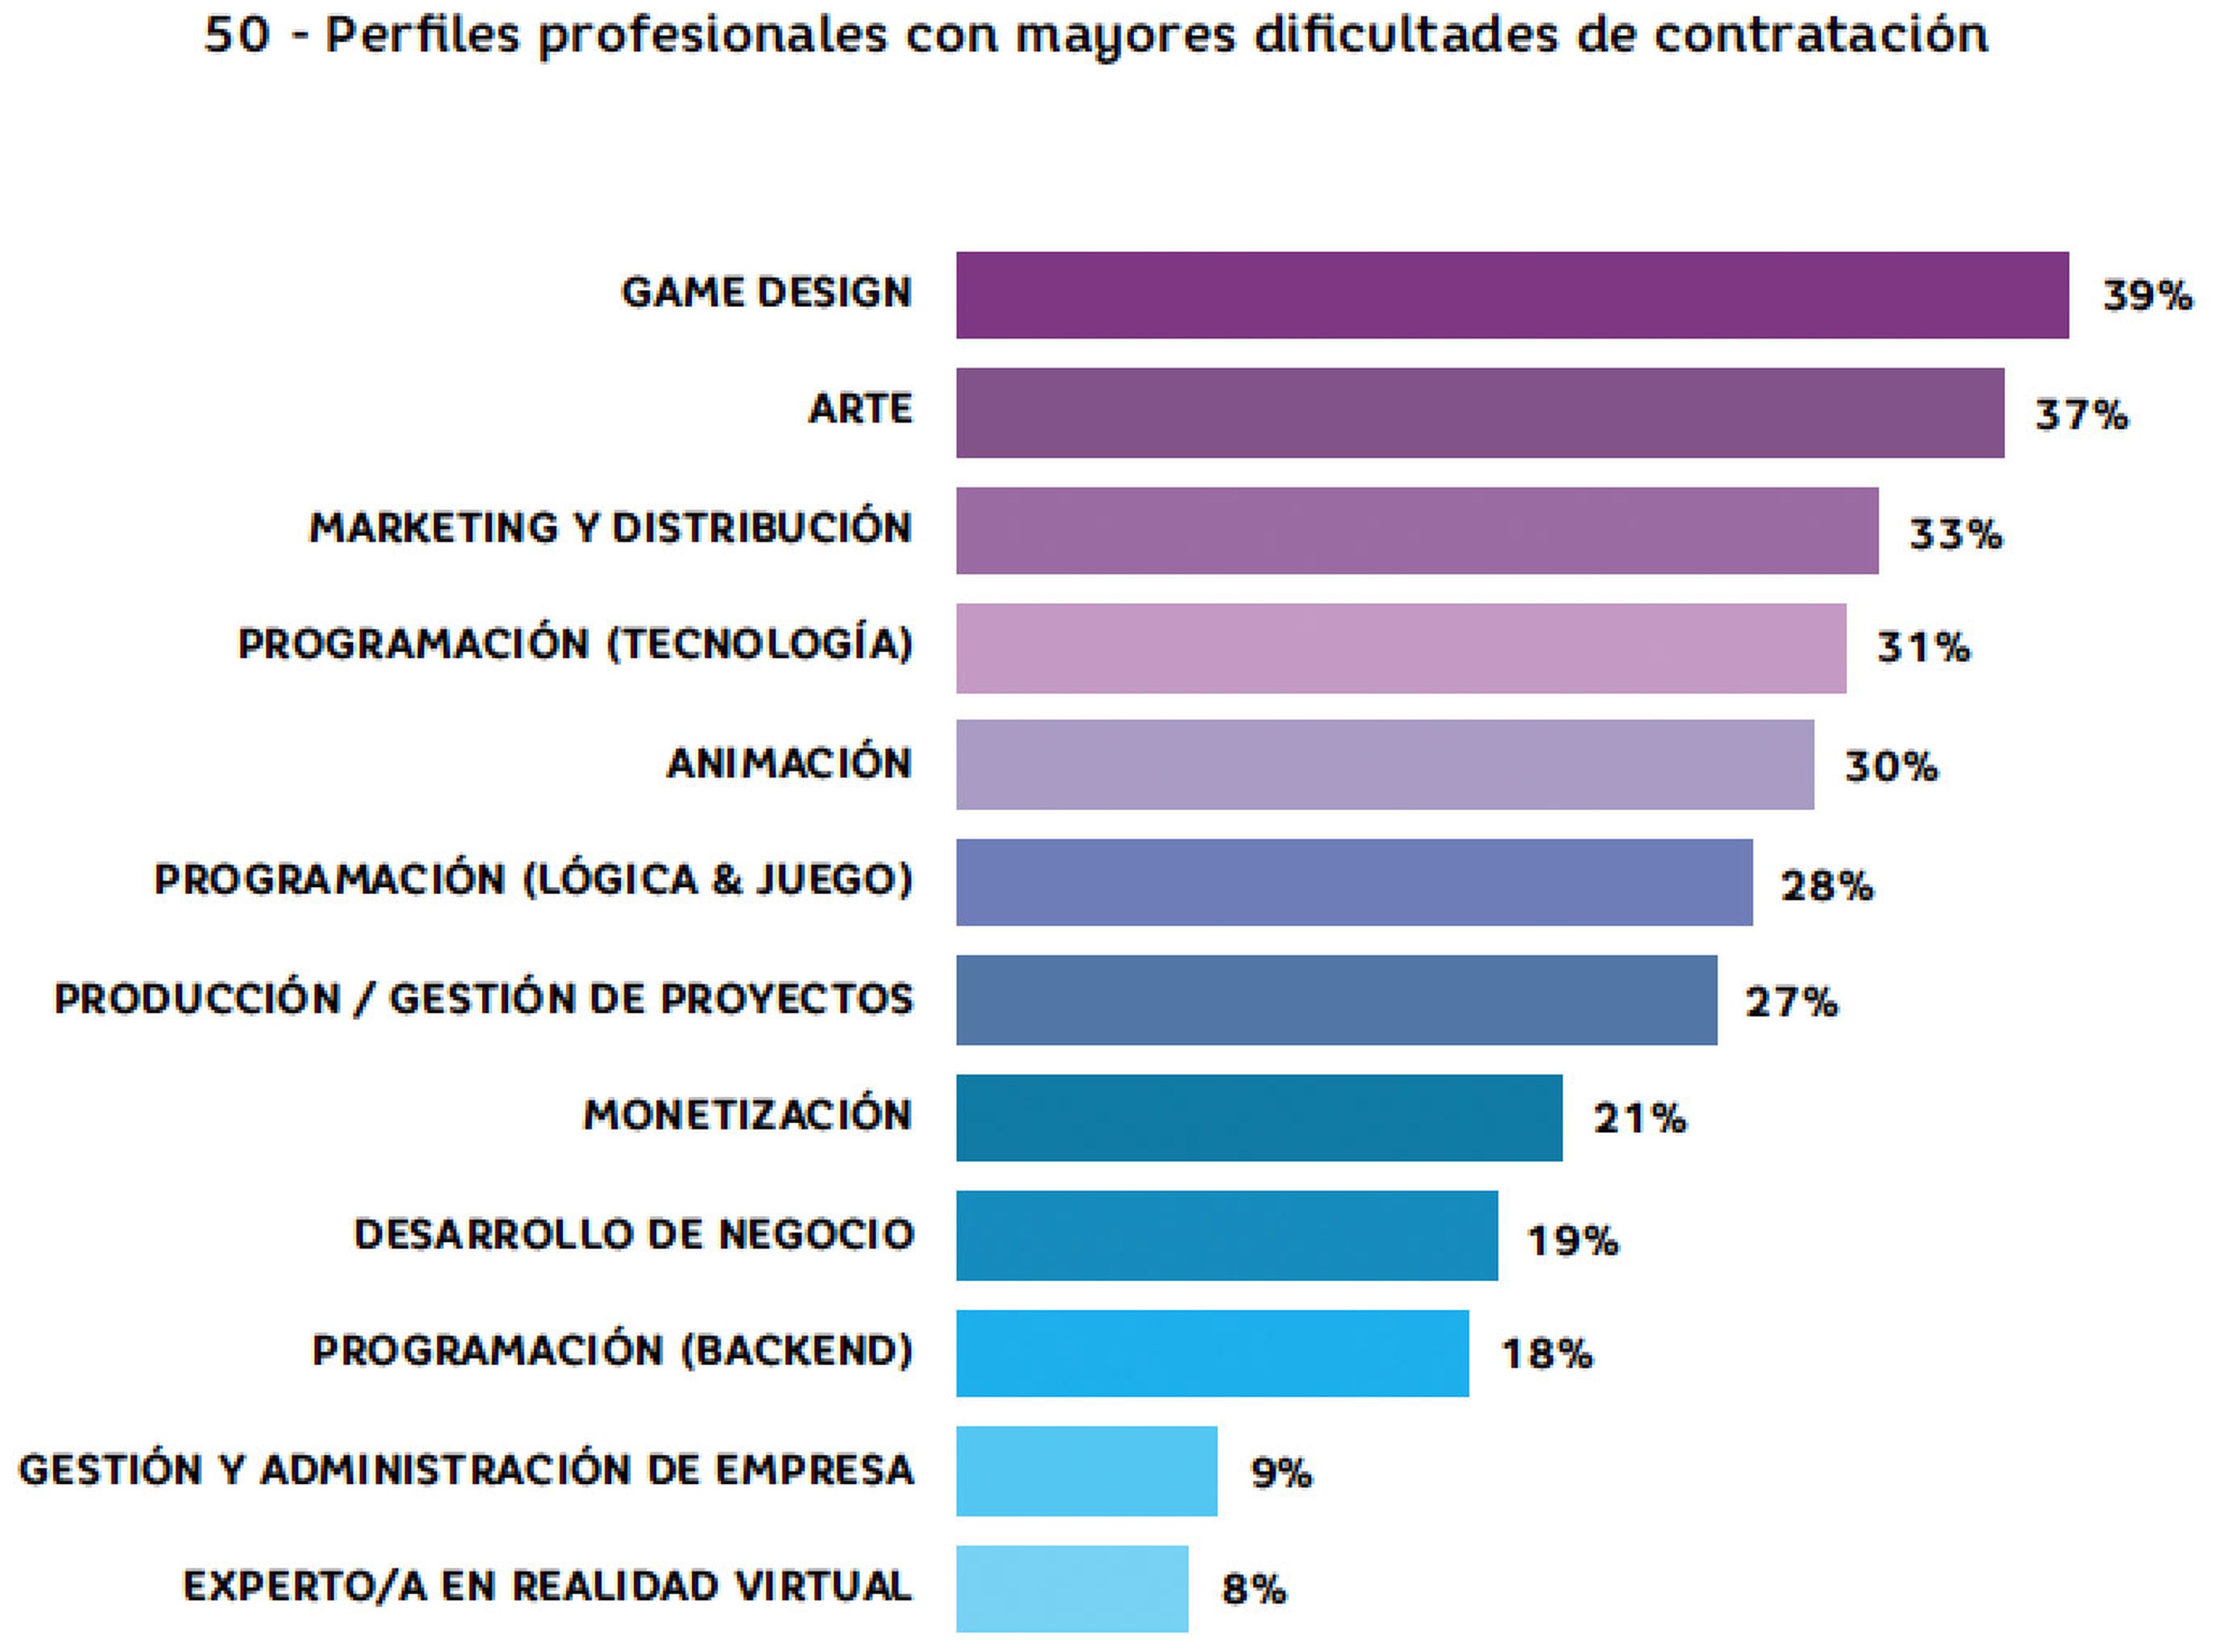 Un 55% de estudios españoles sigue teniendo problemas para encontrar perfiles profesionales adecuados a sus necesidades